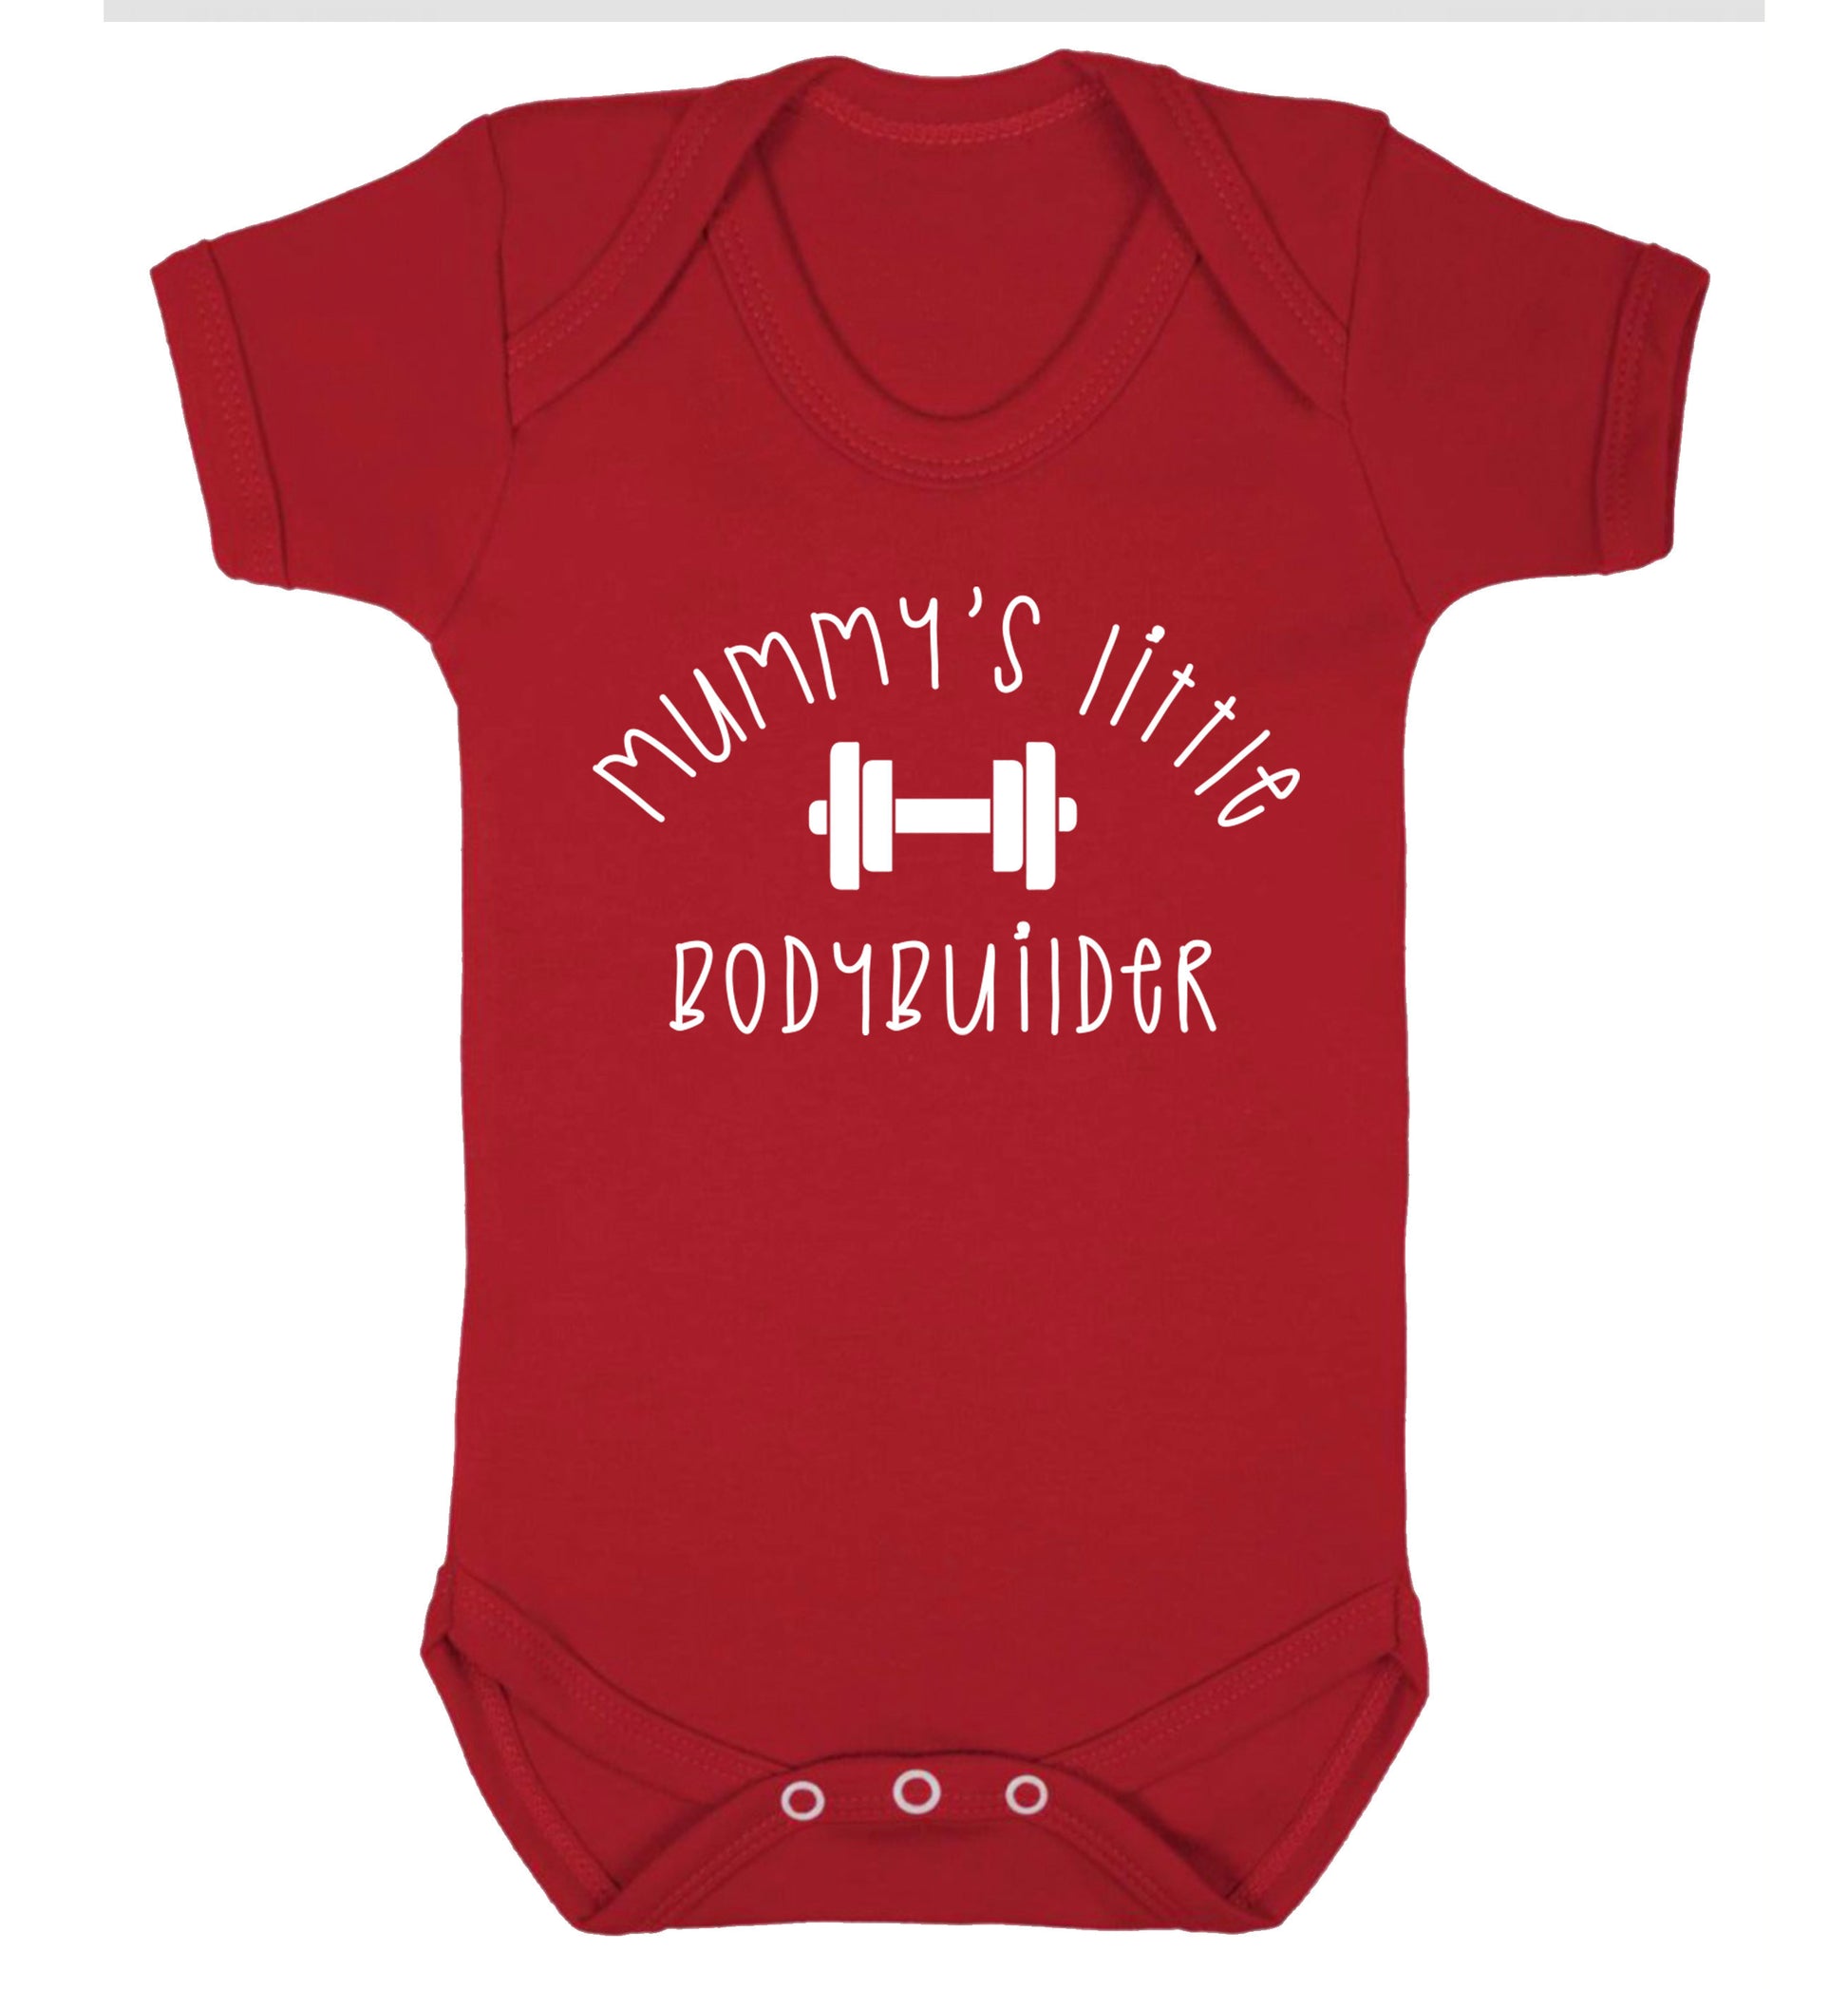 Mummy's little bodybuilder Baby Vest red 18-24 months